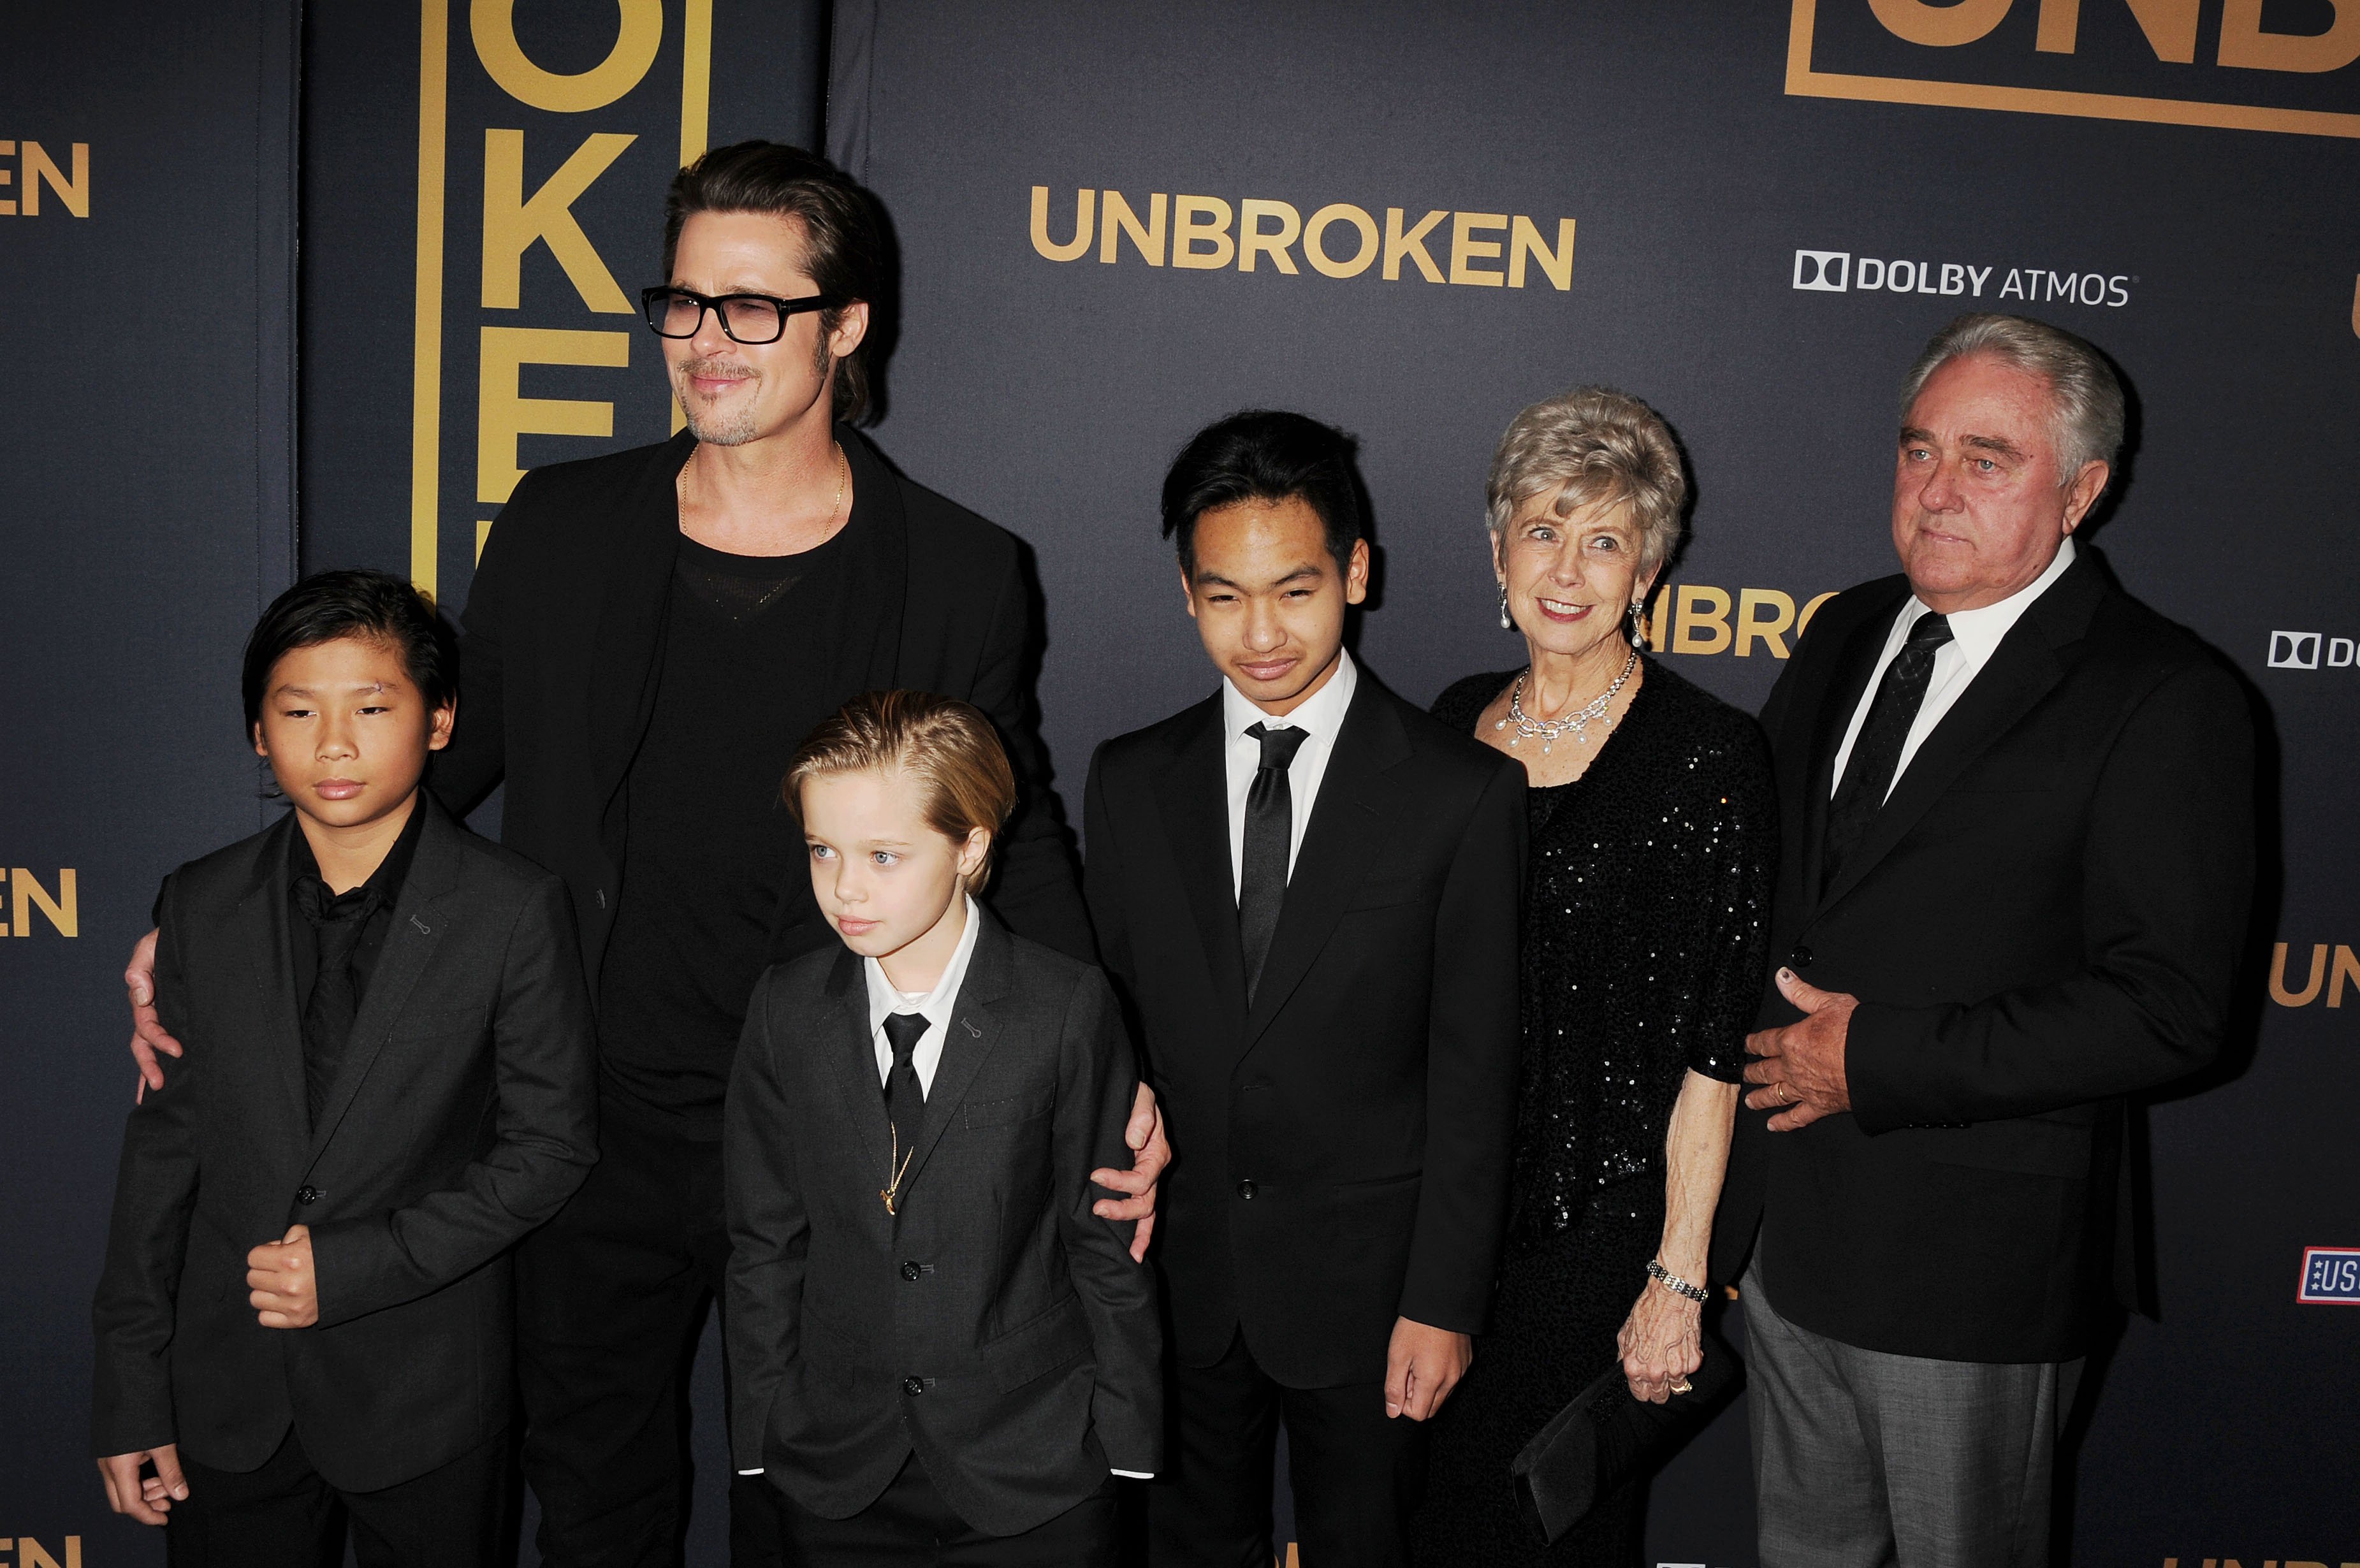 Pax Thien Jolie-Pitt, Brad Pitt, Shiloh Jolie-Pitt, Maddox Jolie-Pitt, Jane Pitt et William Pitt assistent à la première de "Unbroken" qui s'est tenue au Dolby Theatre le 15 décembre 2014 à Hollywood, en Californie. | Source : Getty Images